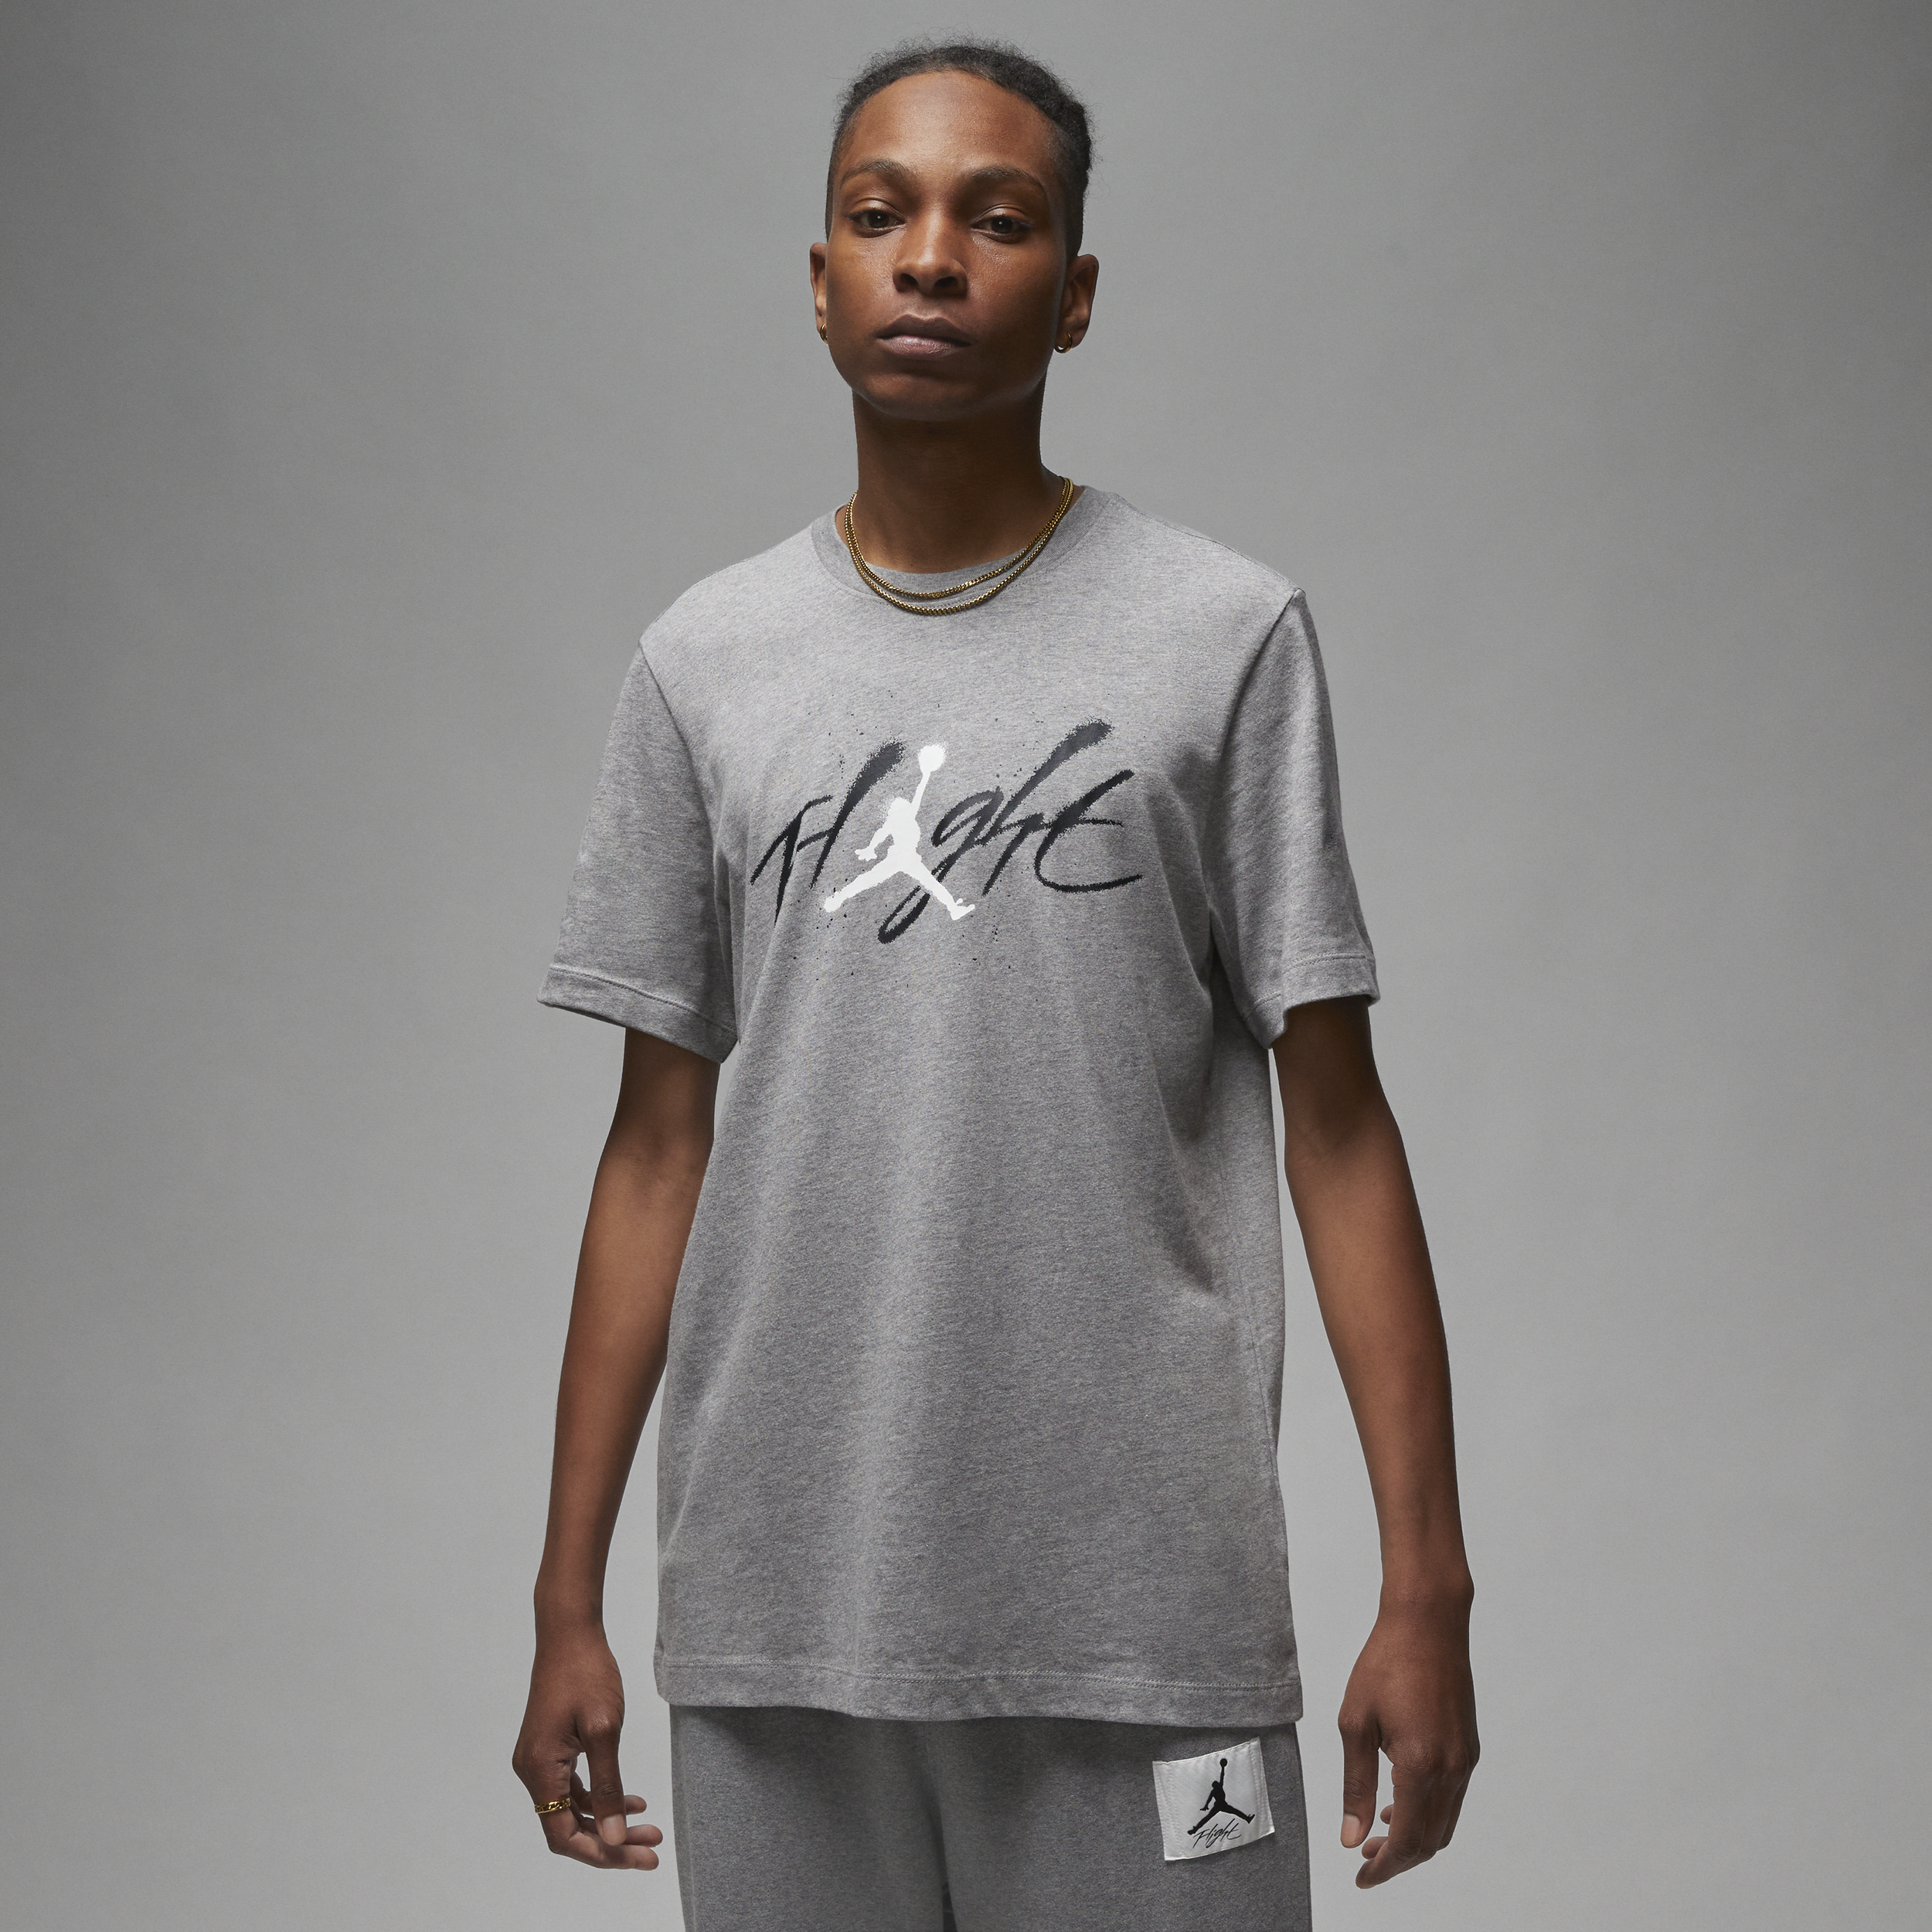 Nike T-shirt con grafica Jordan - Uomo - Grigio